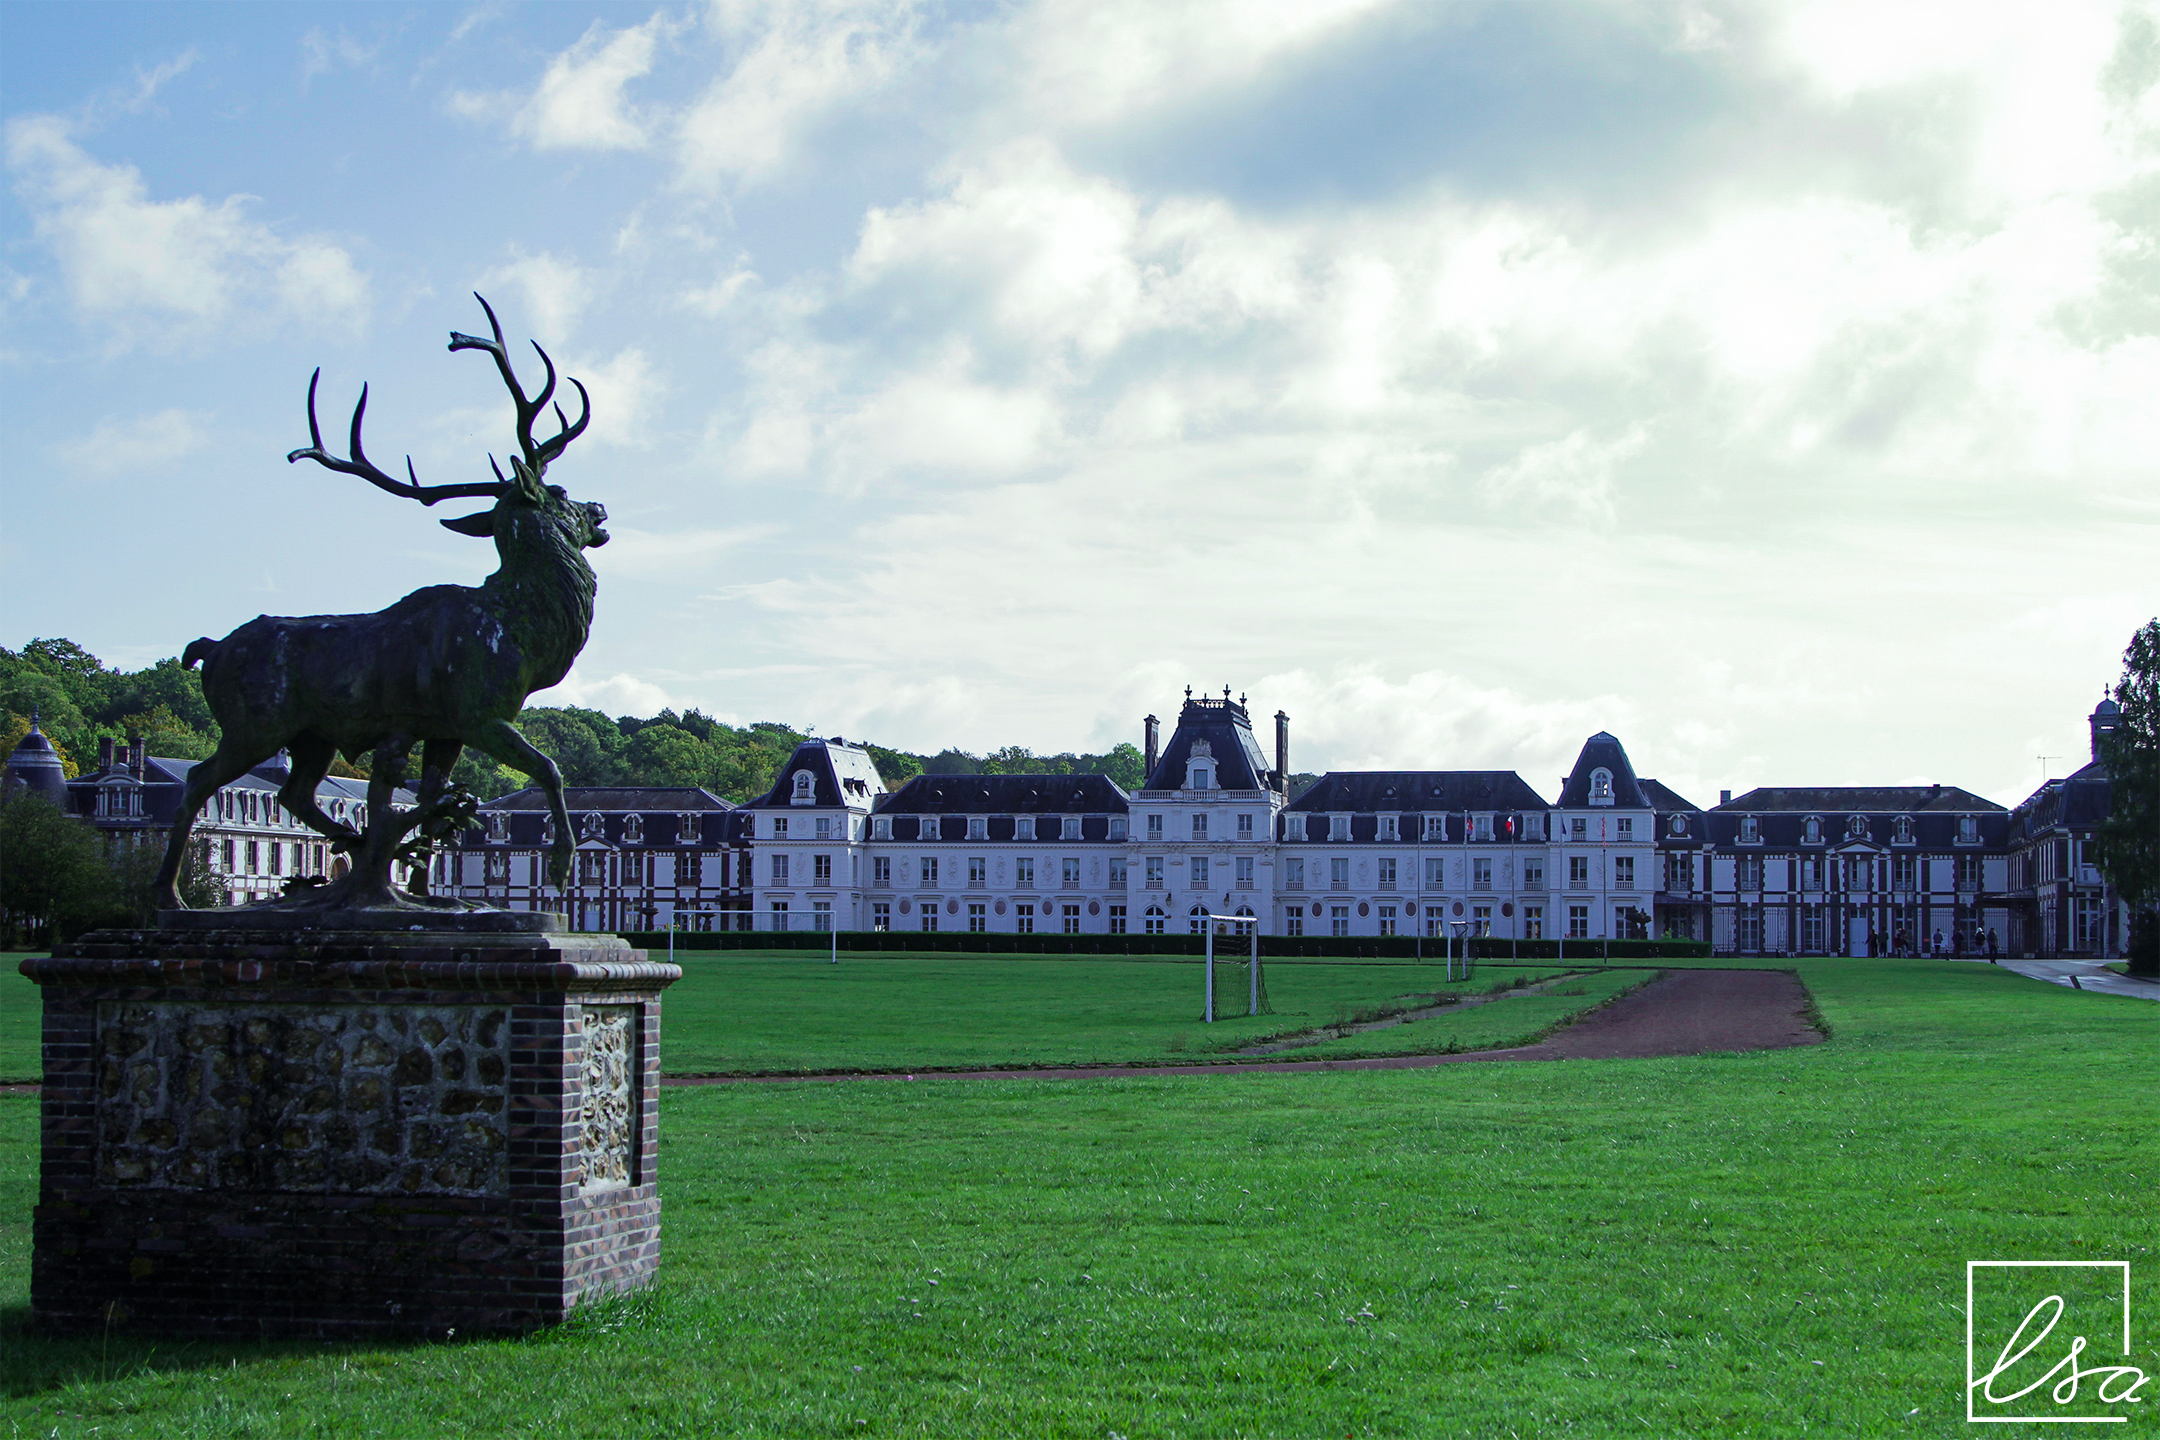 Photographie d'une statue de cerf située dans les jardins du Château des Vaux, avec le bâtiment en arrière plan.